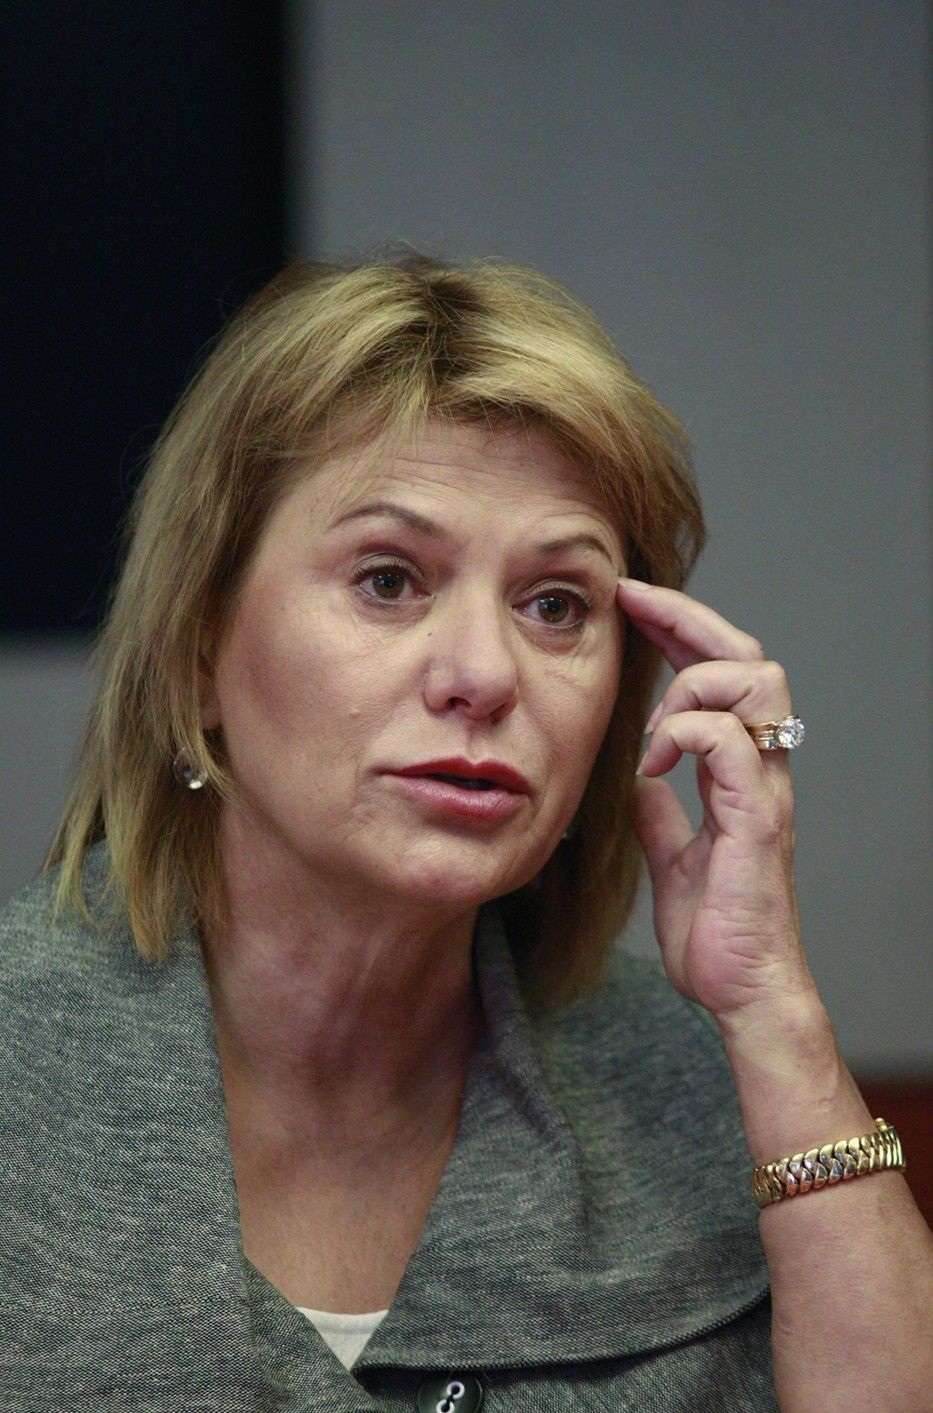 Former Yahoo CEO Carol Bartz